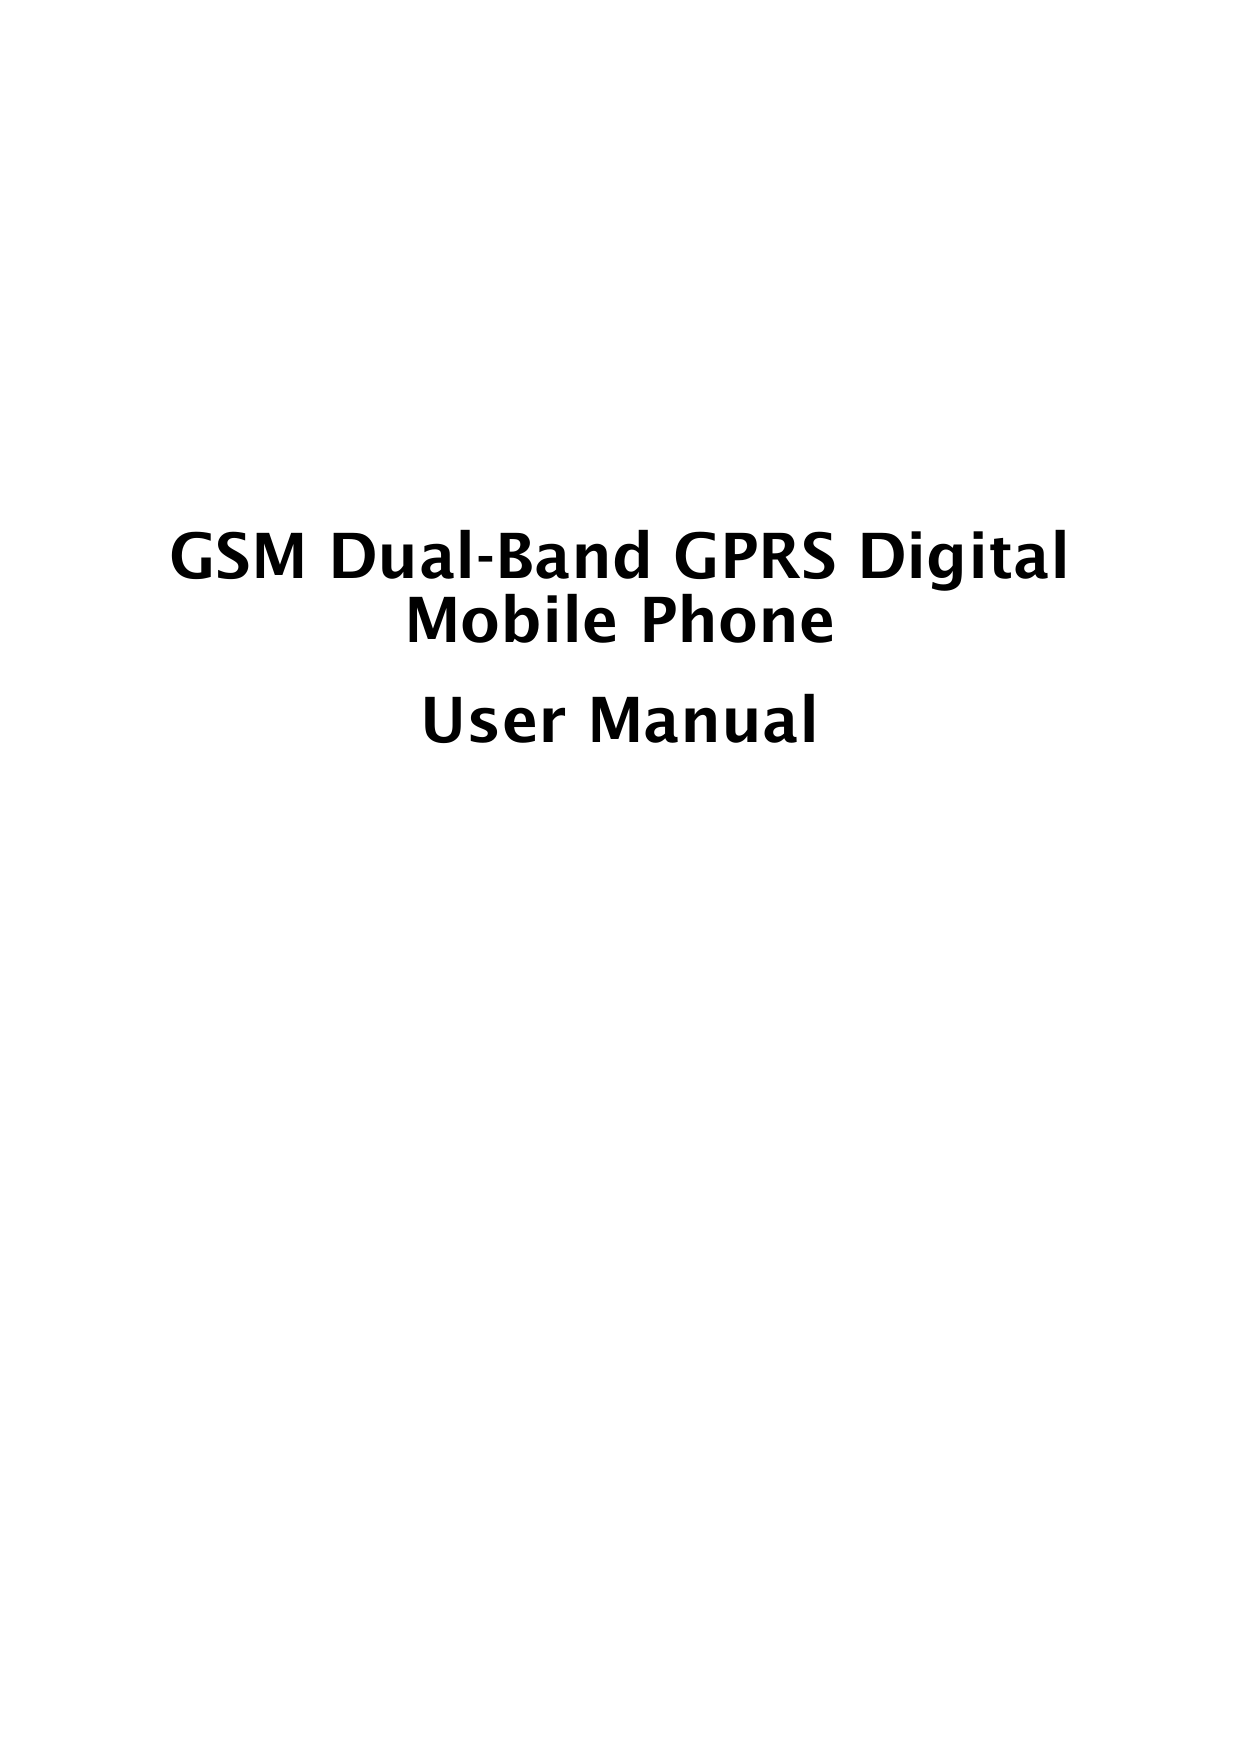       GSM Dual-Band GPRS Digital Mobile Phone User Manual             